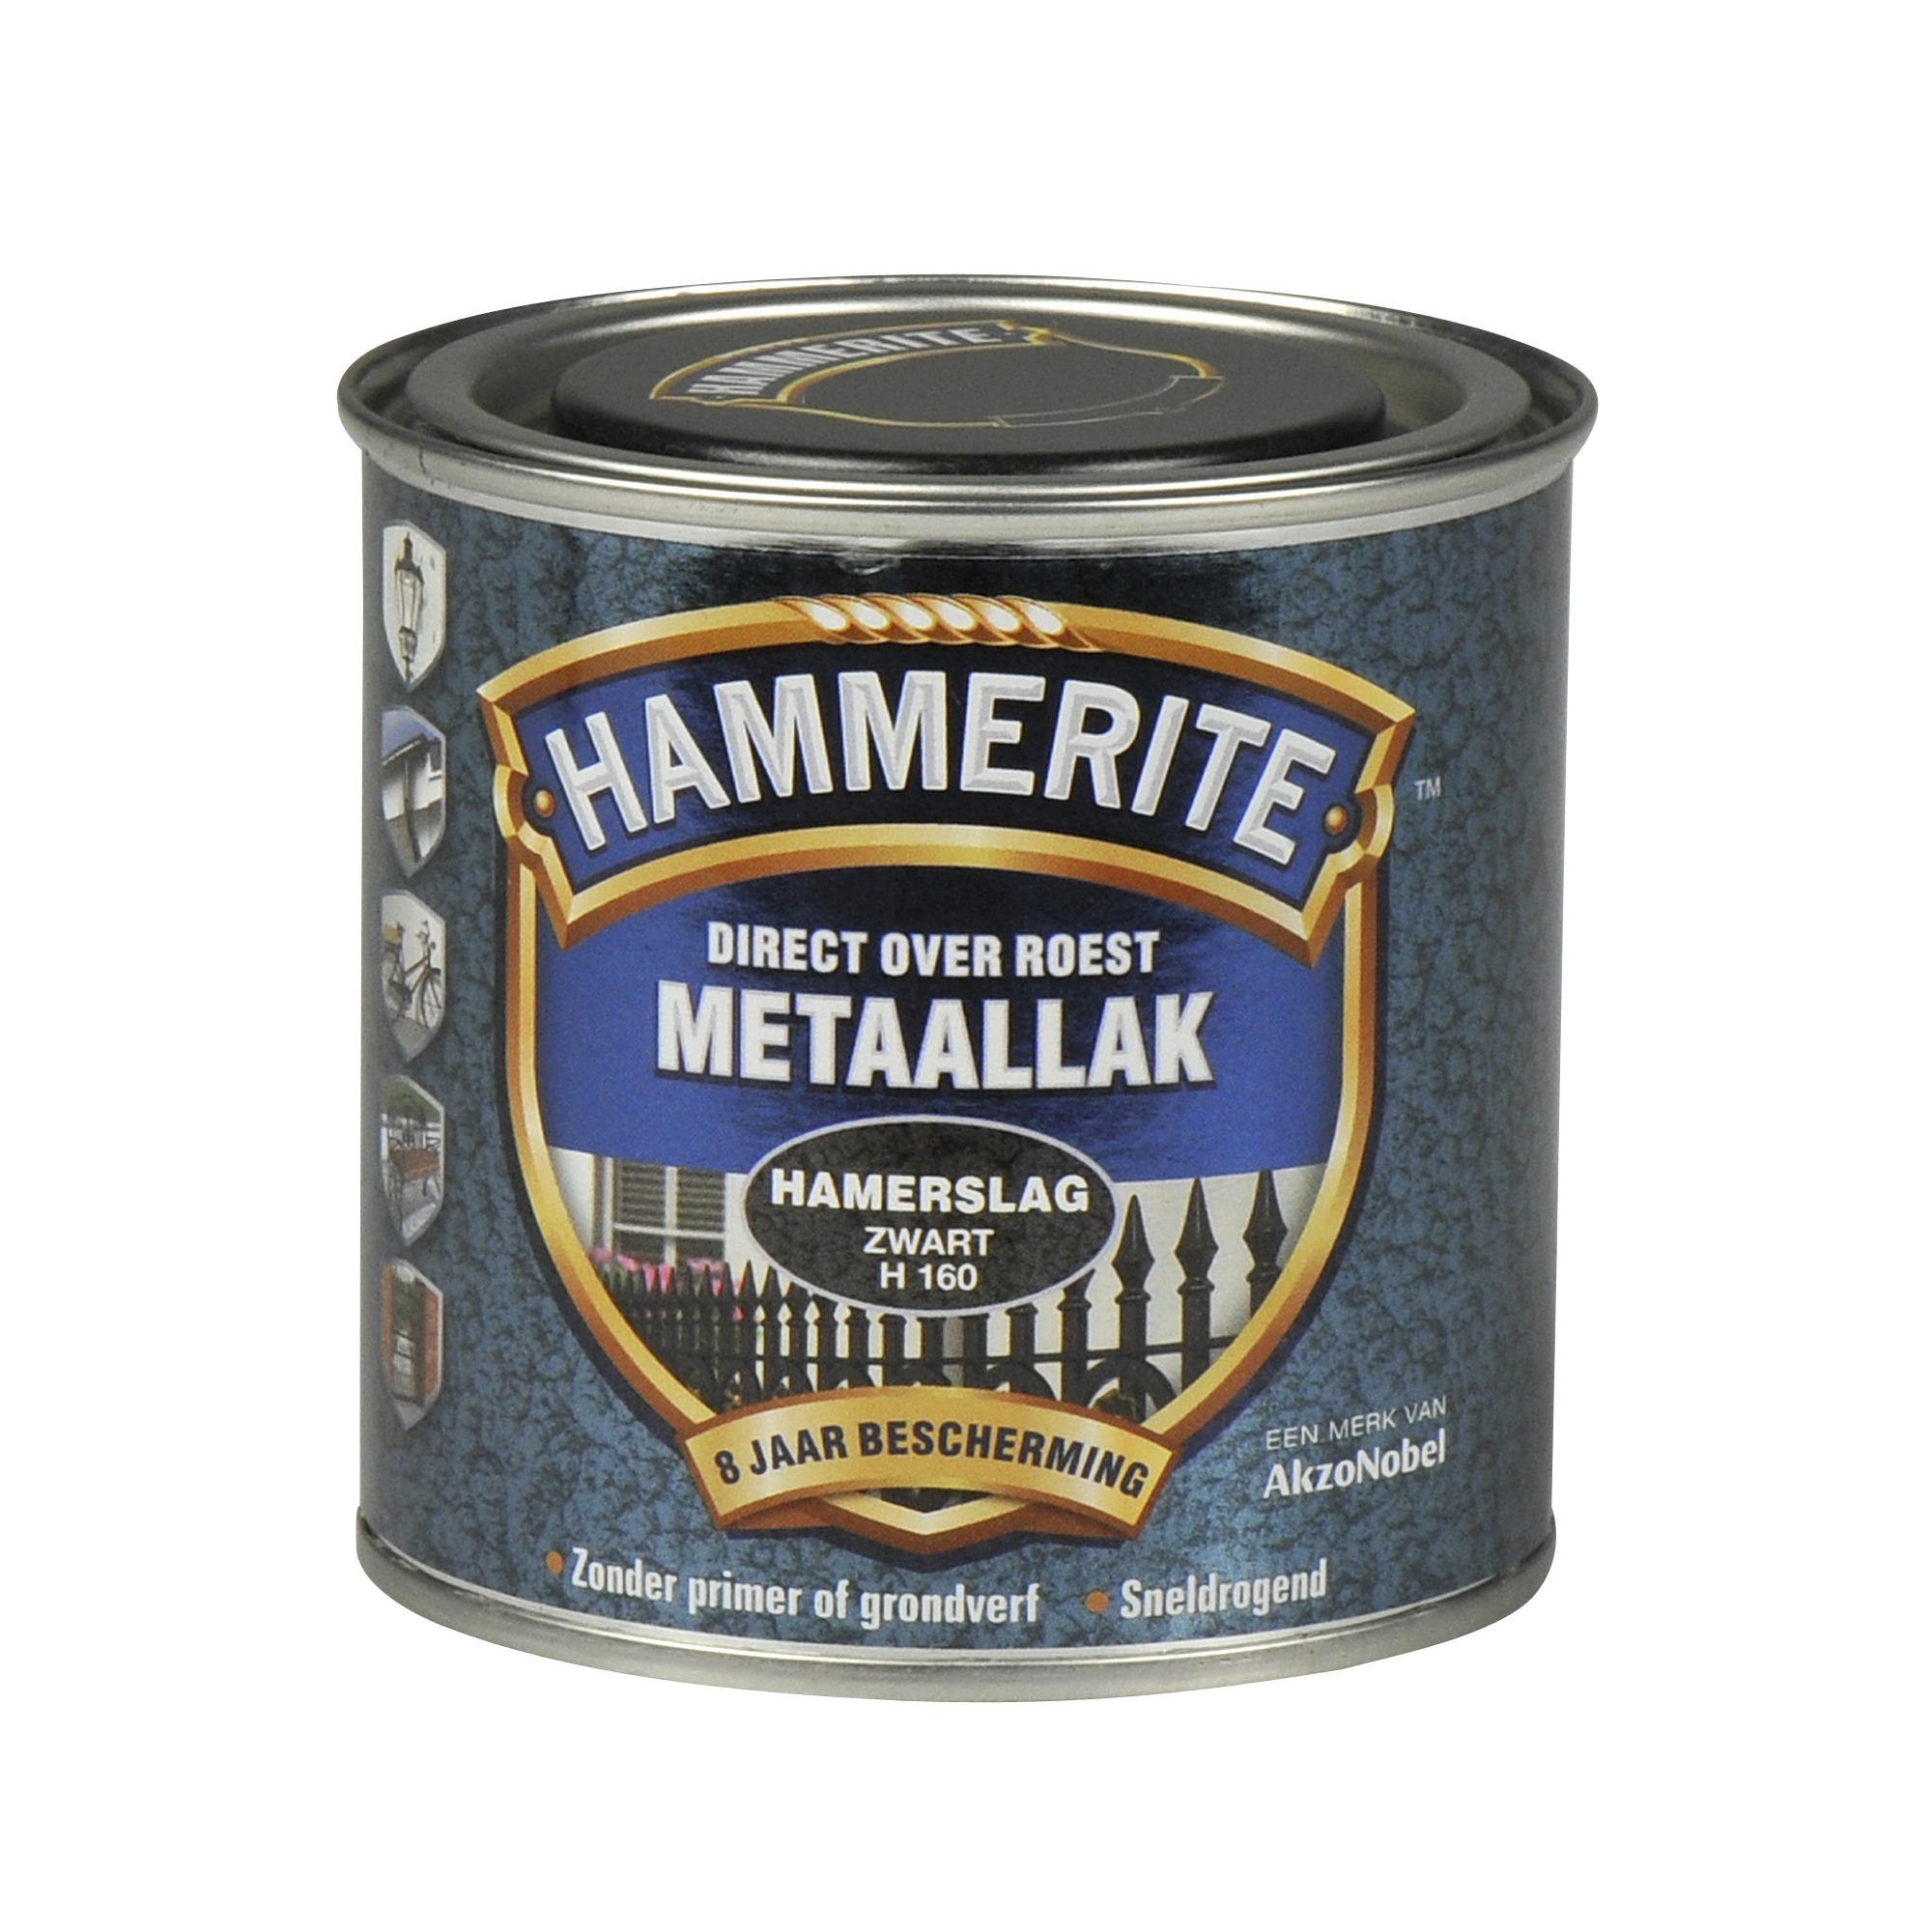 Hammerite direct over roest metaallak hamerslag zwart - 250 ml